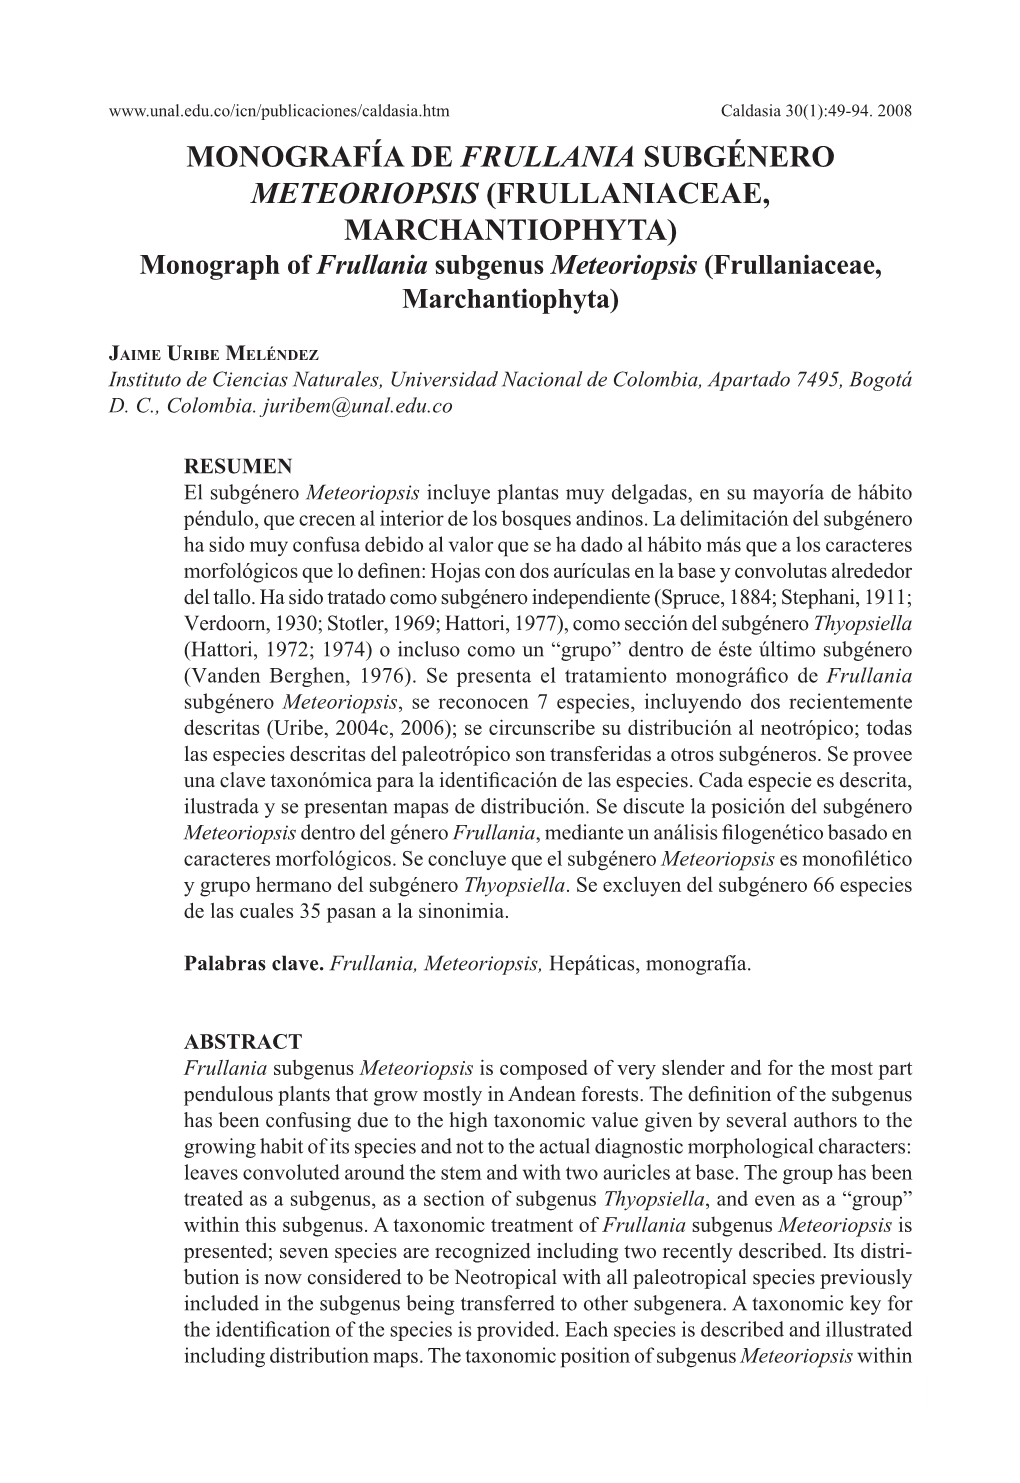 MONOGRAFÍA DE FRULLANIA SUBGÉNERO METEORIOPSIS (FRULLANIACEAE, MARCHANTIOPHYTA) Monograph of Frullania Subgenus Meteoriopsis (Frullaniaceae, Marchantiophyta)